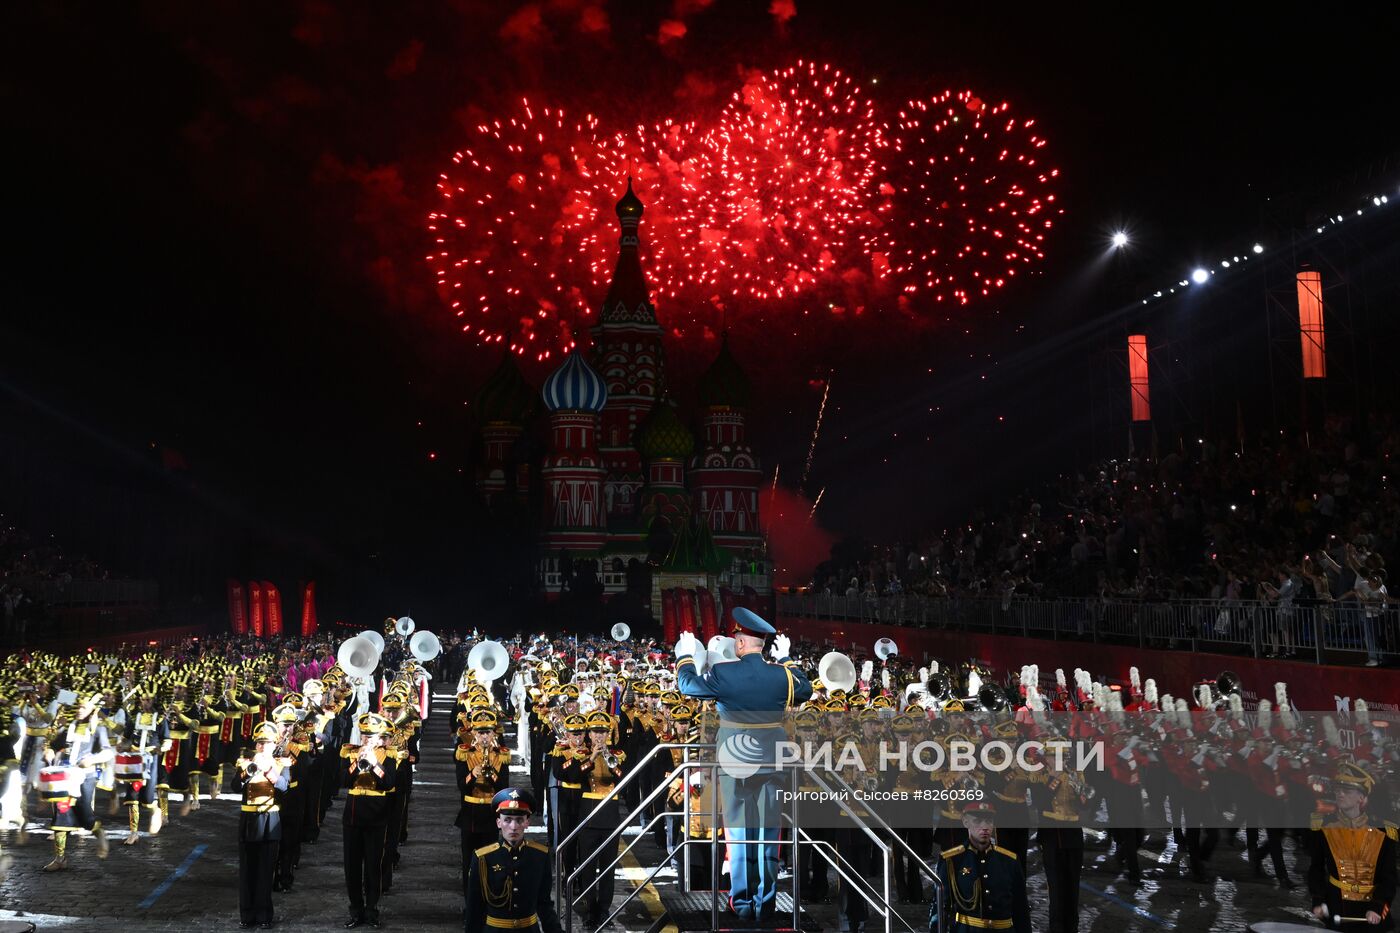 Генеральная репетиция военно-музыкального фестиваля "Спасская башня"